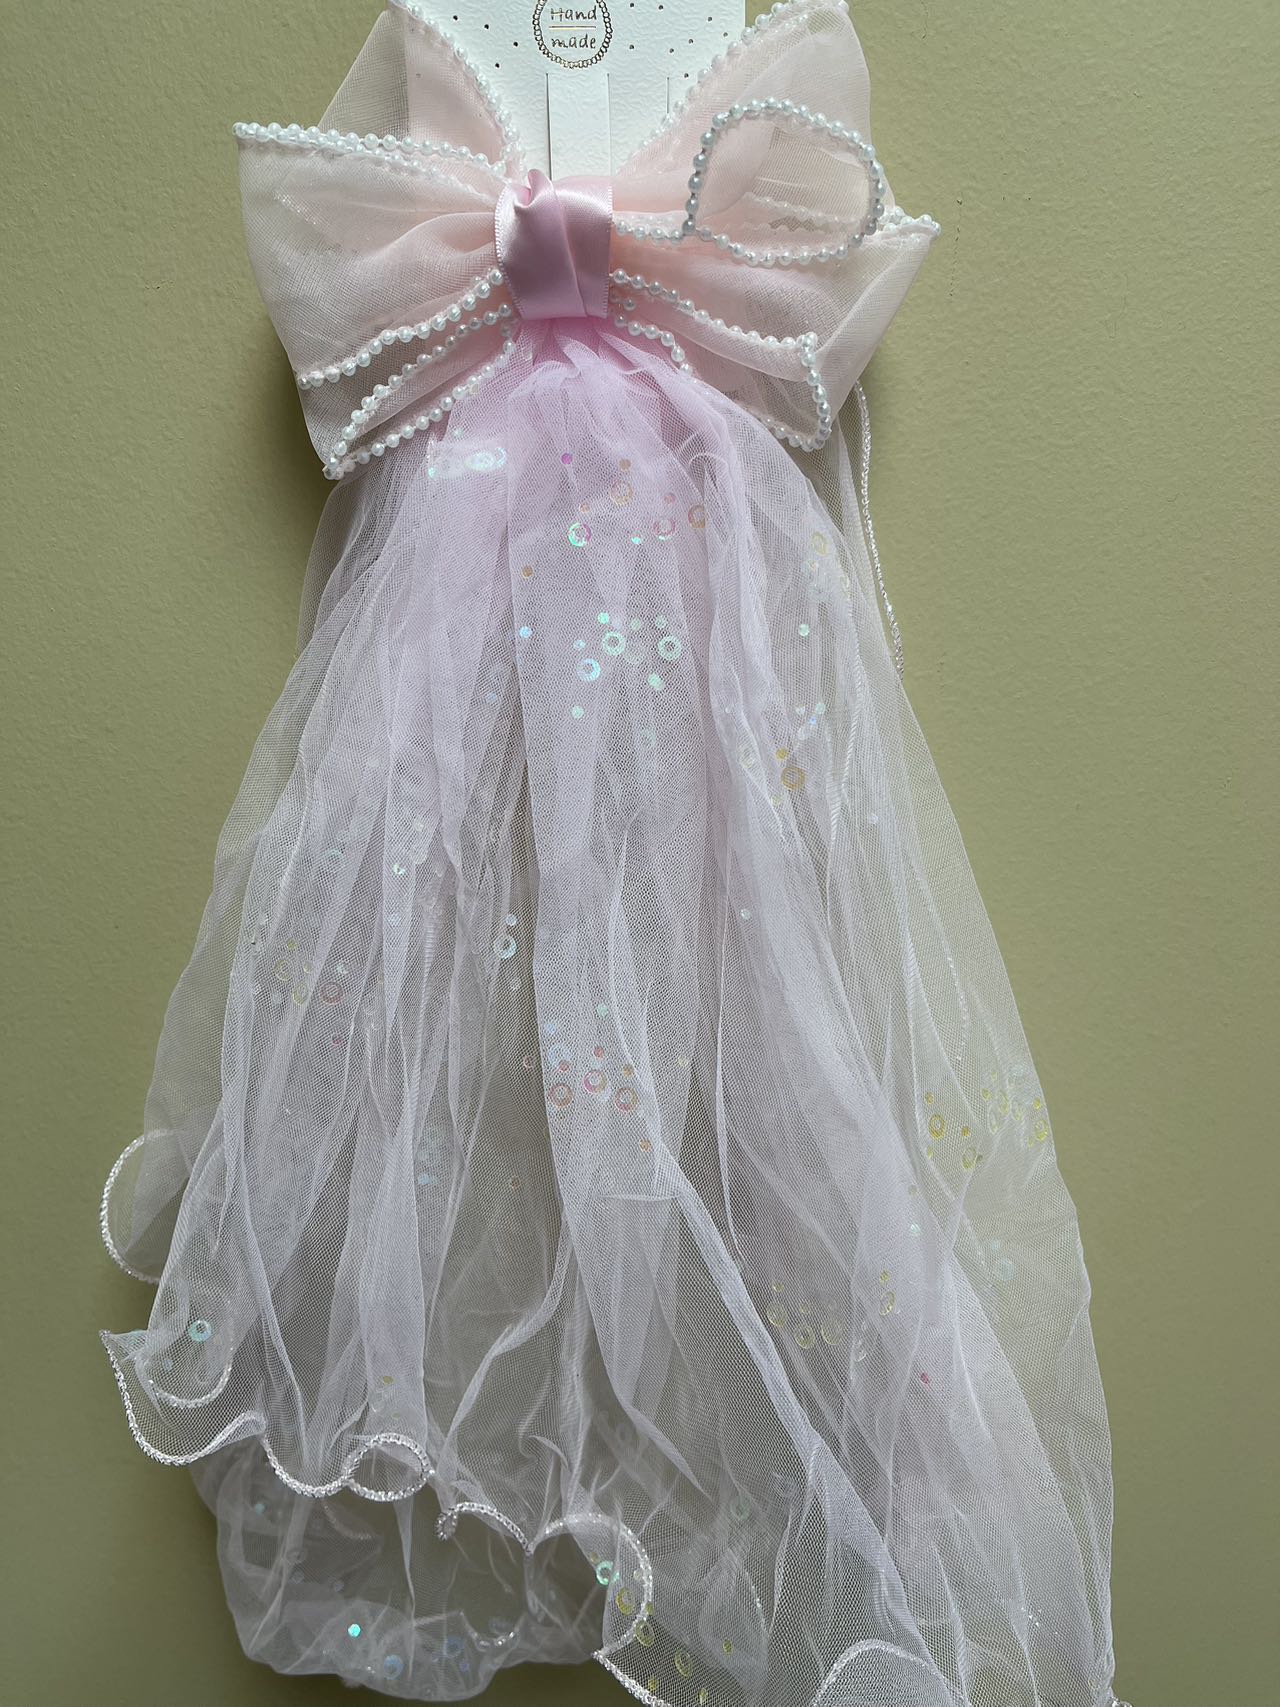 Hair Bow Veil Bachelorette Party Pearl Hair Clips Wedding Veil Bride Headwear Princess Fairy Hair Accessories